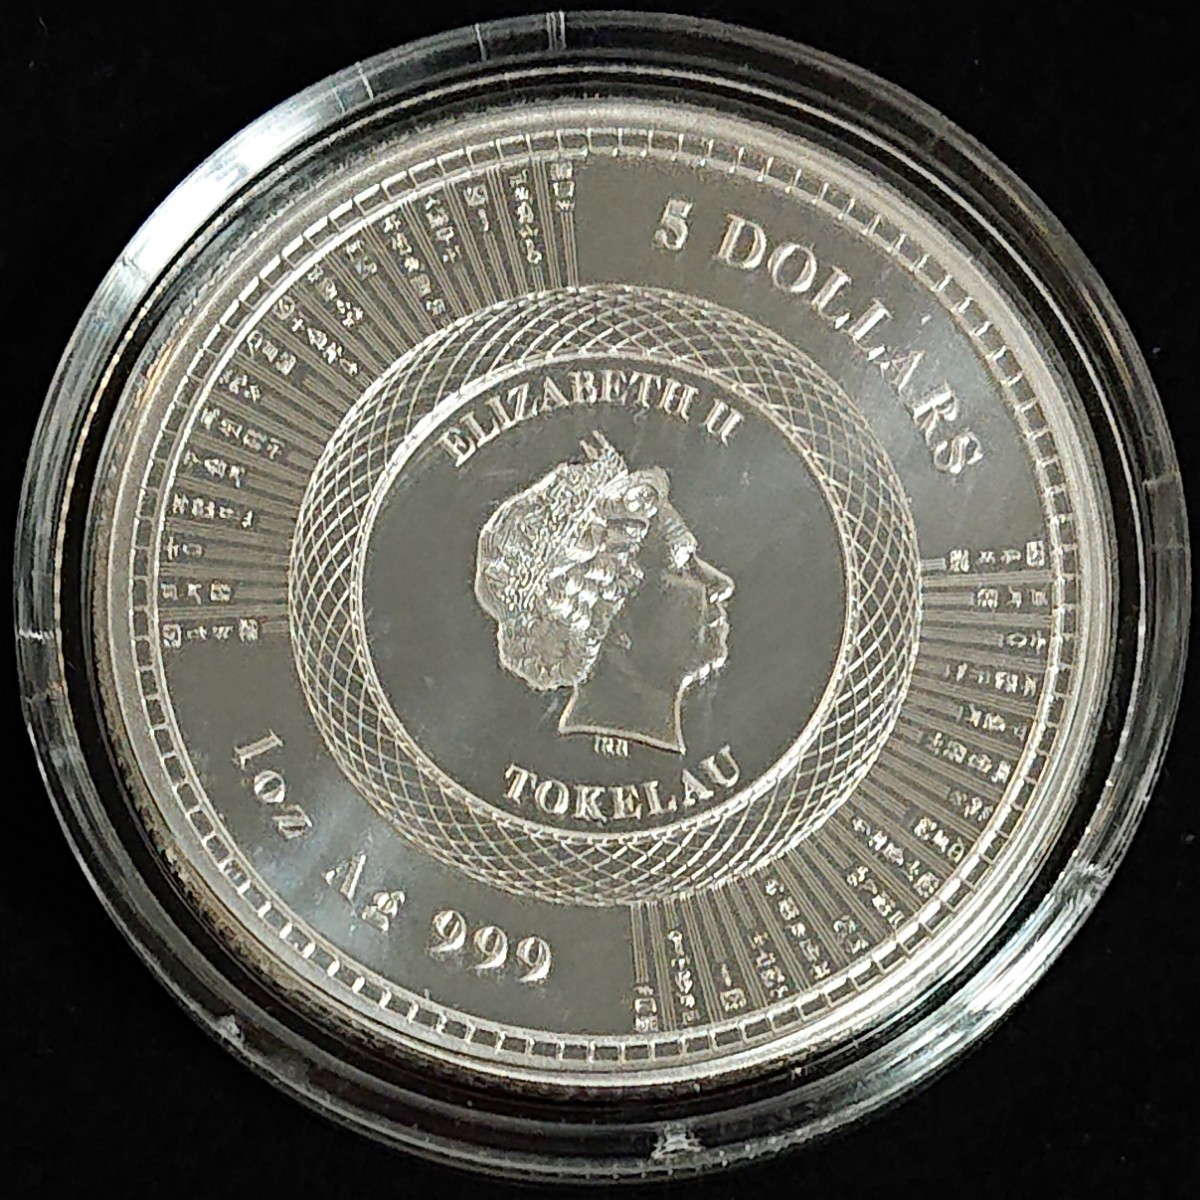 純銀 トケラウ 1オンス 銀貨 ヒューマニタス銀貨 2020年 コインケース 